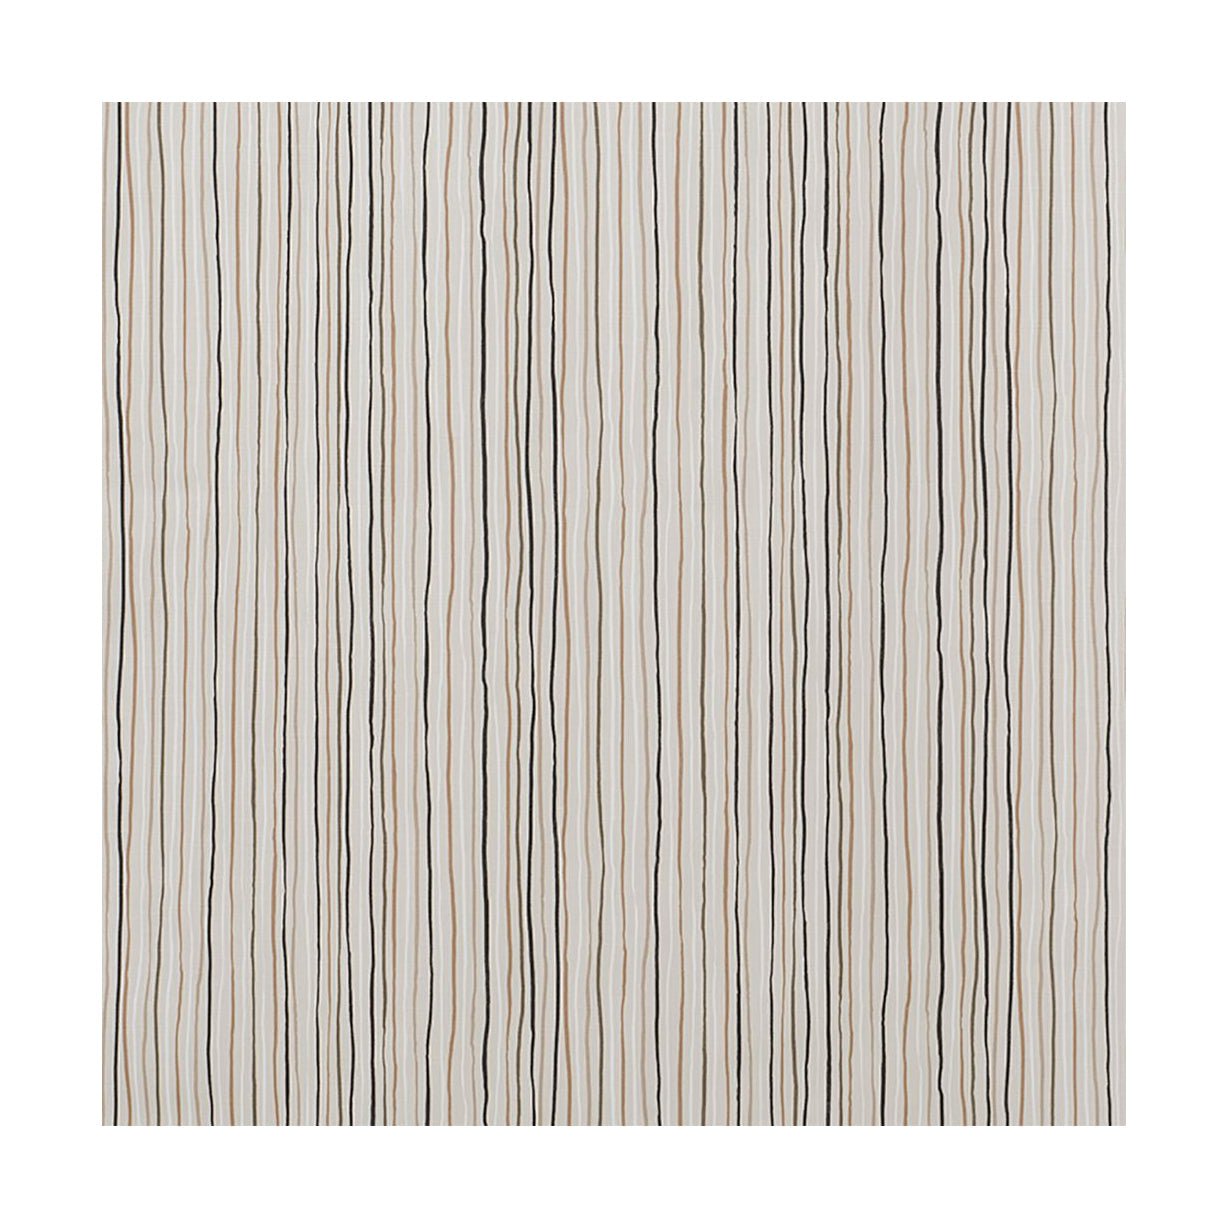 Šířka tkaniny Spira Stripe 150 cm (cena za metr), více přírodní